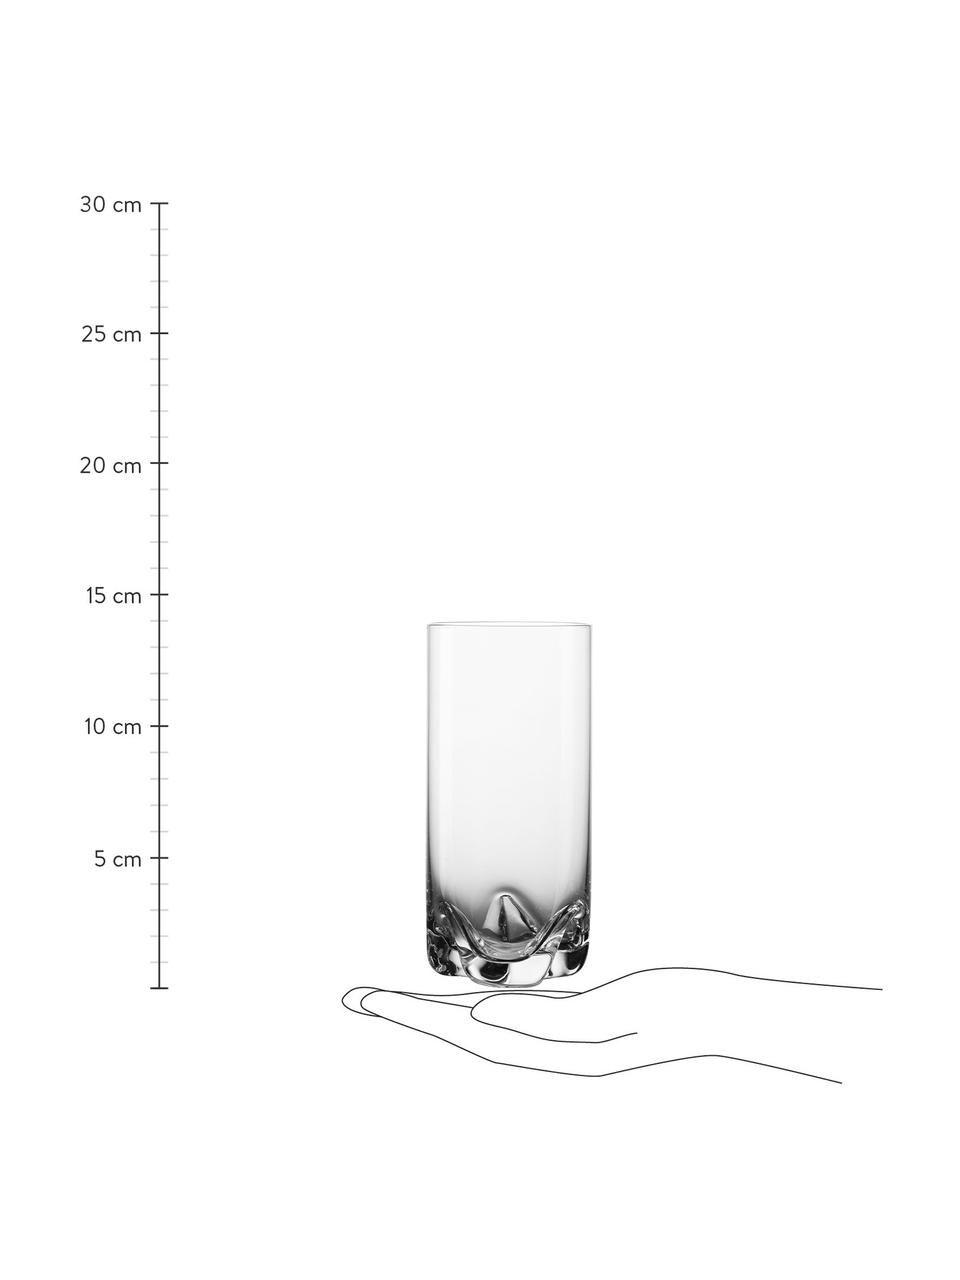 Longdrinkglazen So, 4 stuks, Glas, Transparant, Ø 7 x H 14 cm, 350 ml